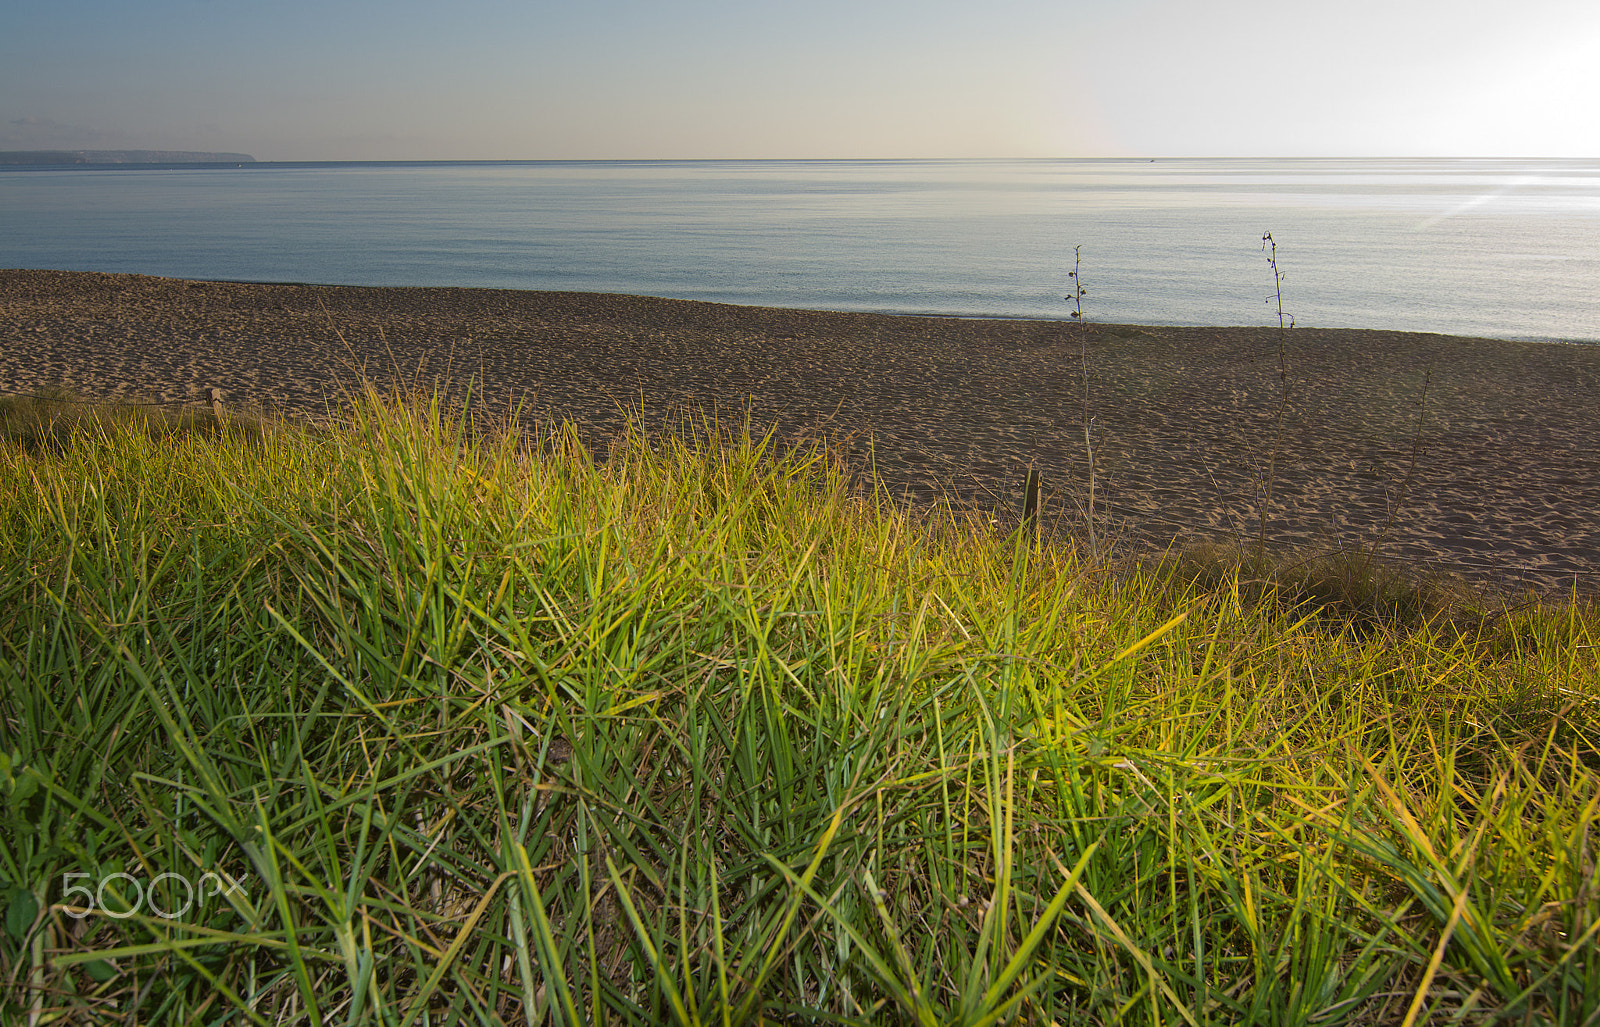 Nikon D7100 + Zeiss Milvus 35mm f/2 sample photo. Green grass near beach photography